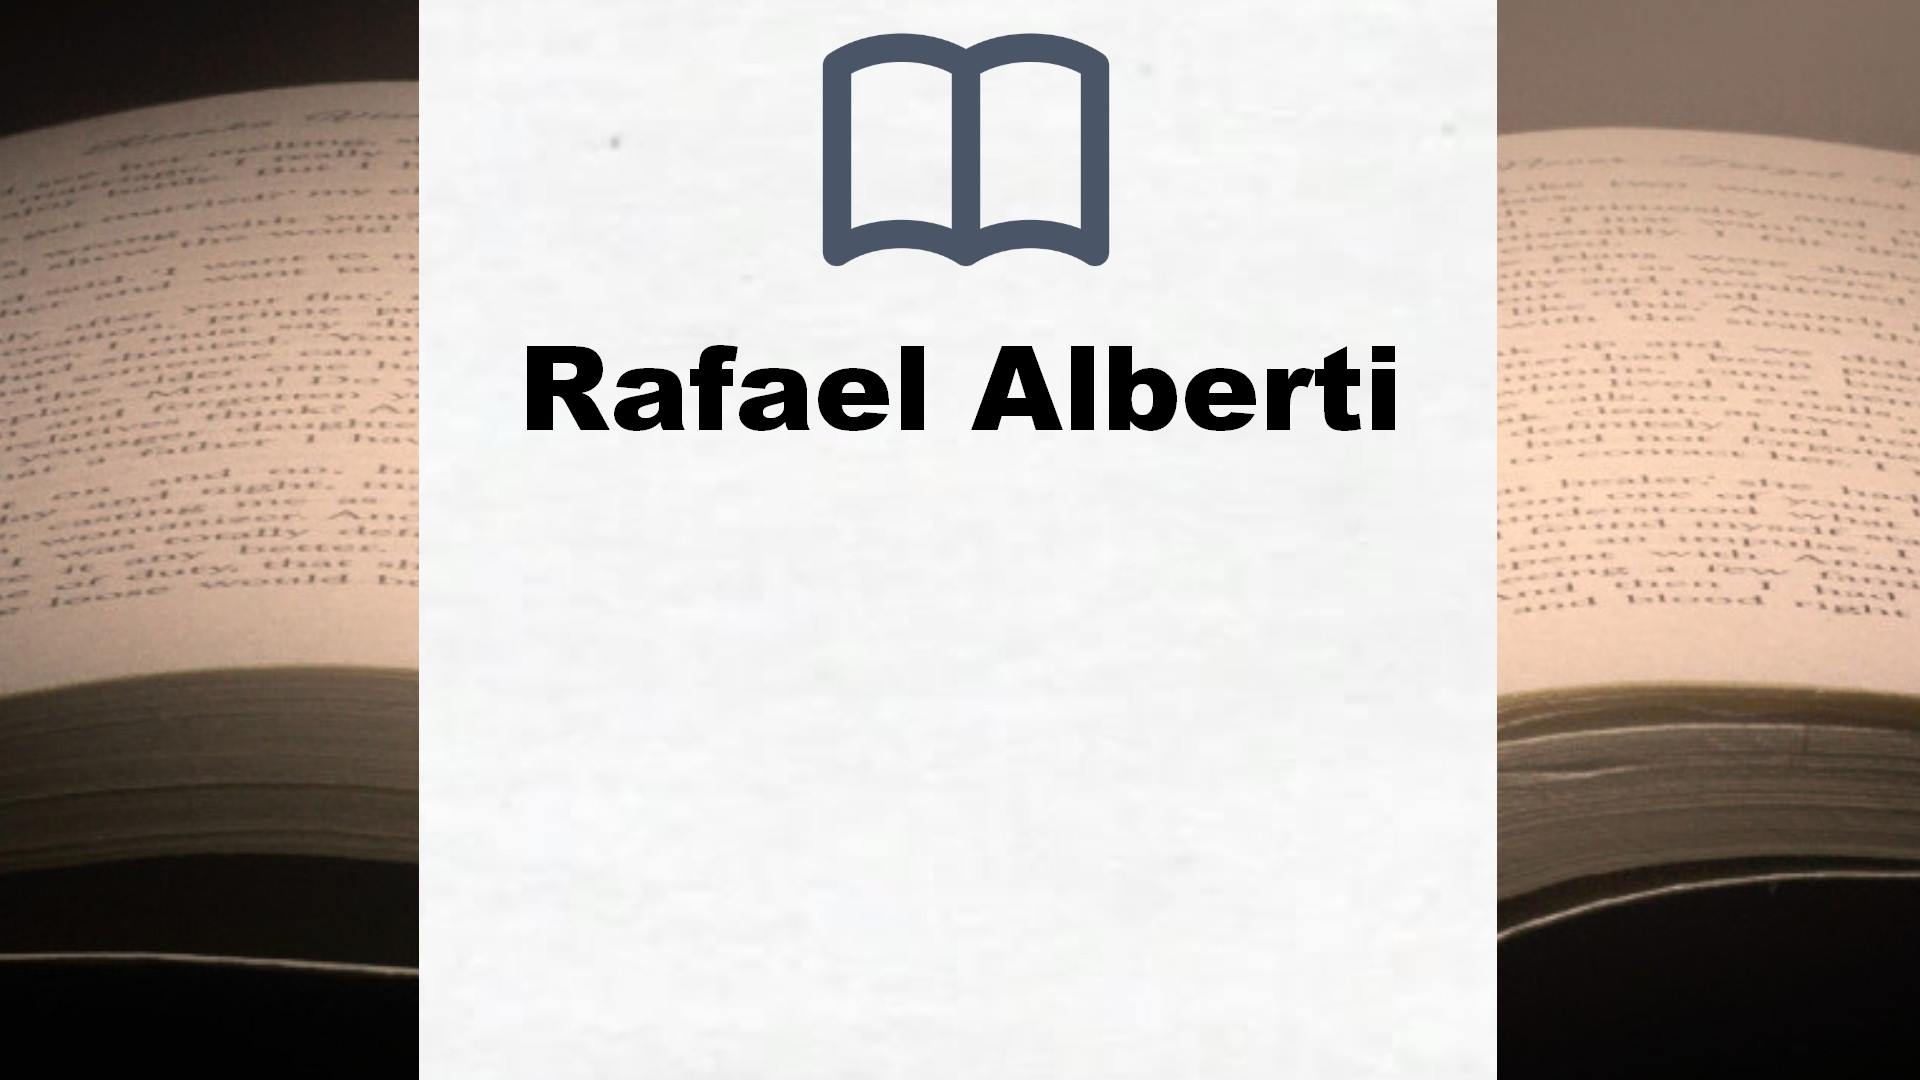 Libros Rafael Alberti